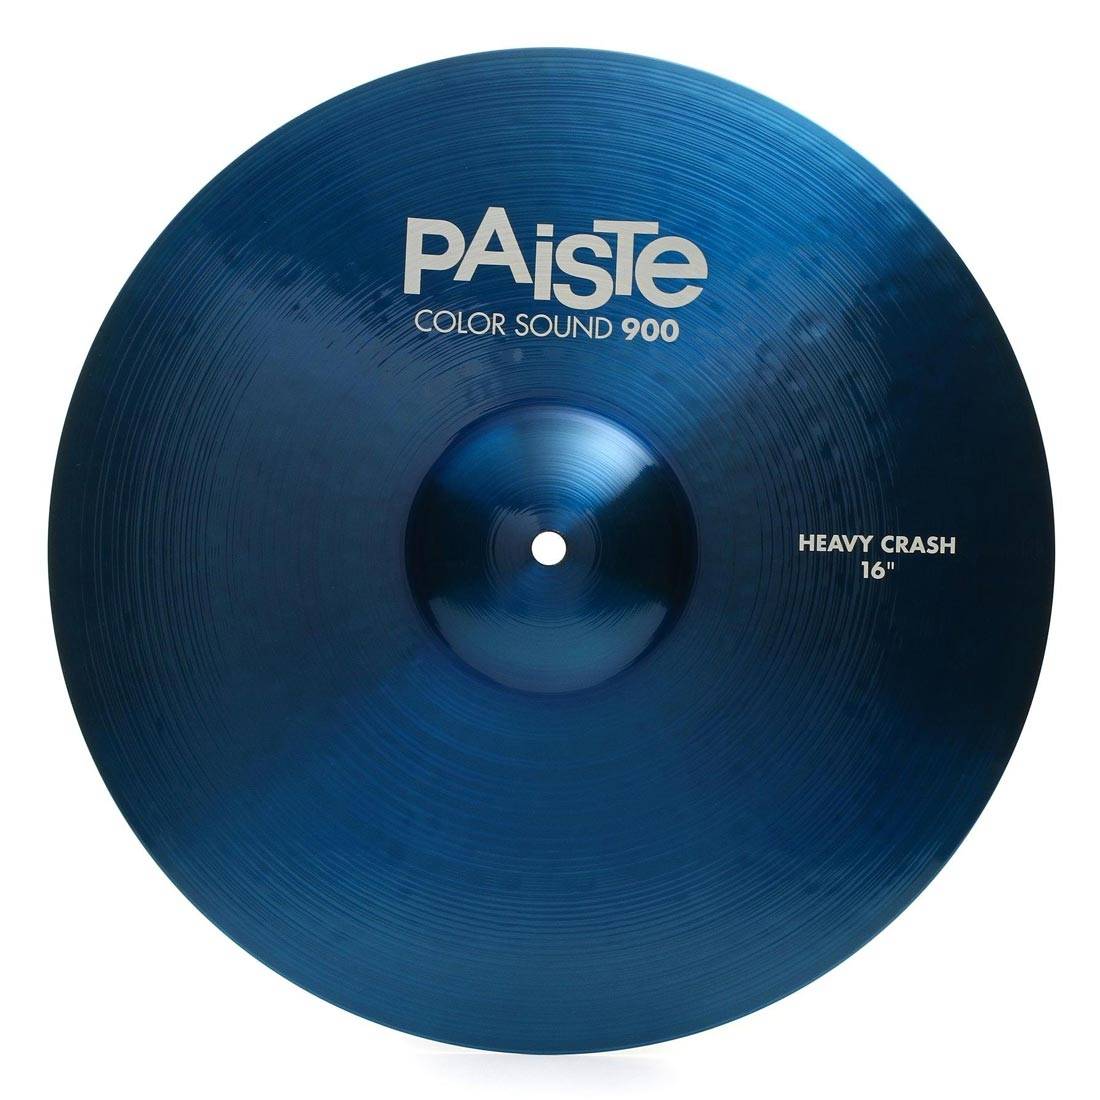 PAISTE 900 Color Sound 16'' Blue Heavy Crash Cymbal